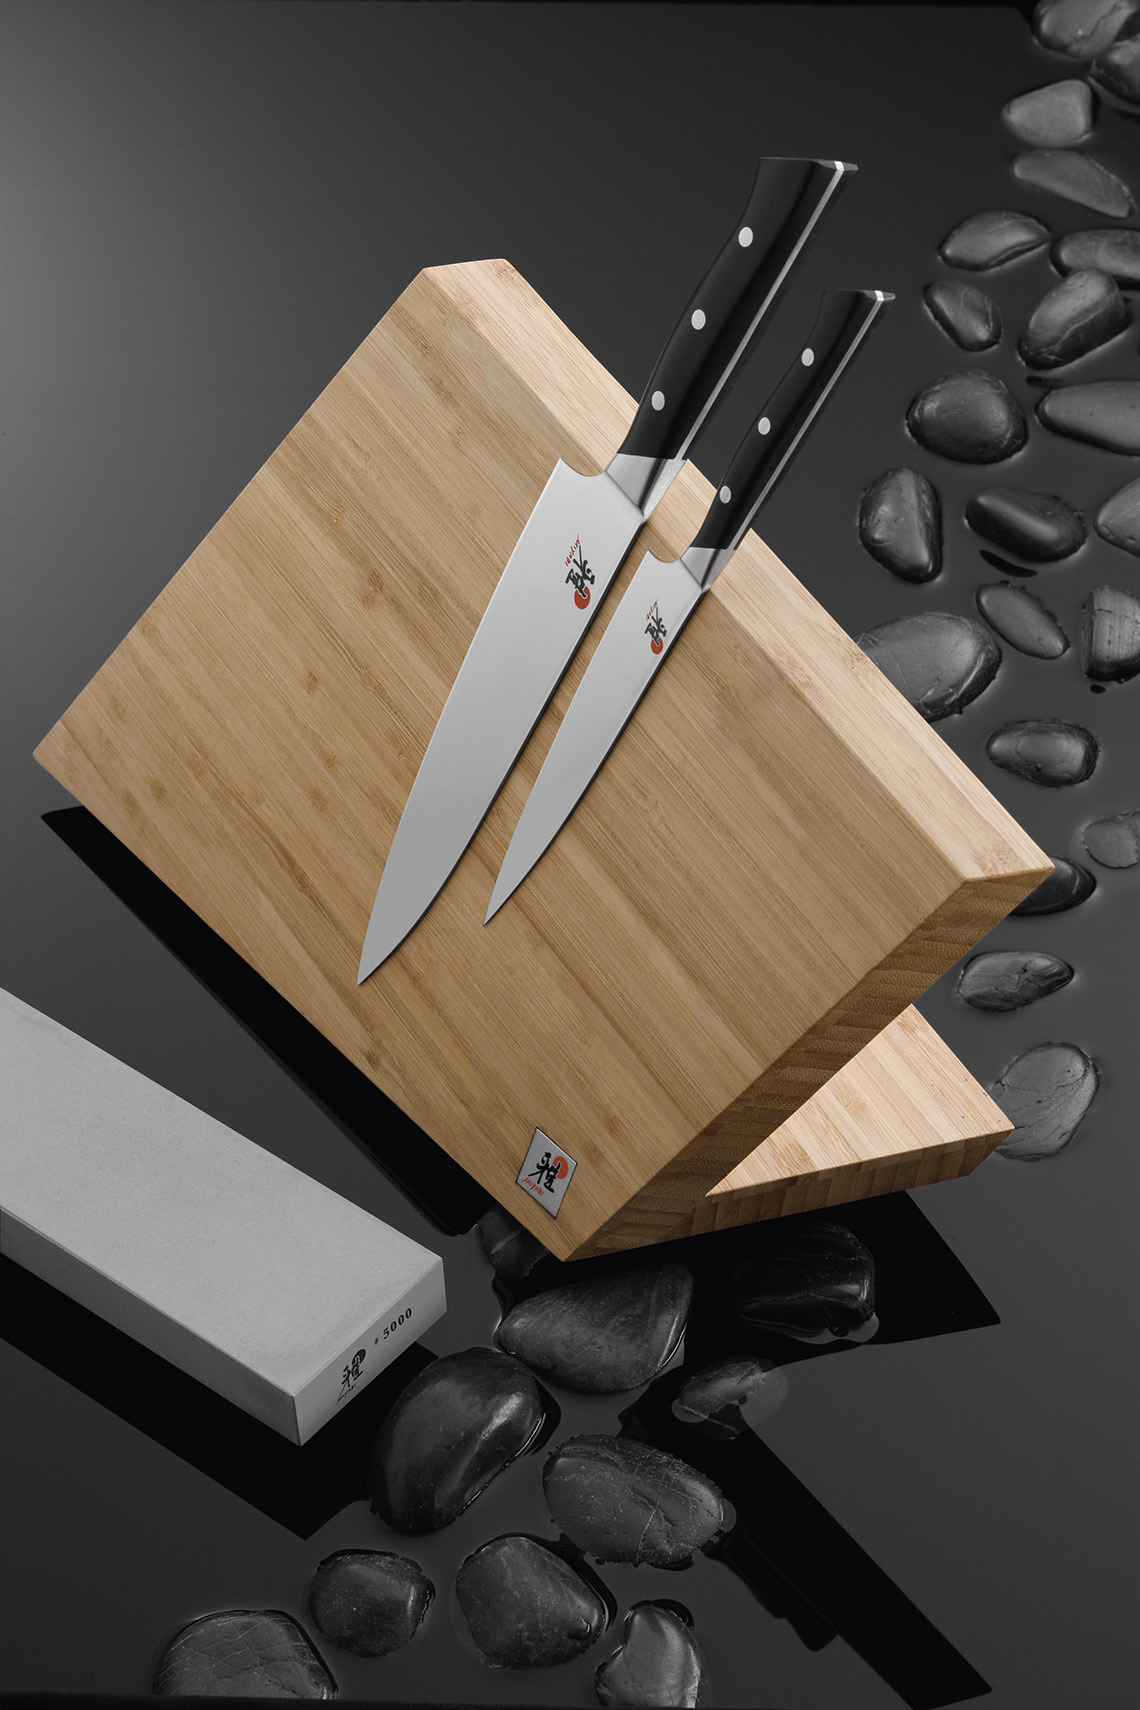 Przechowywanie noży kuchennych na drewnianych pulpitach jest bardzo wygodne